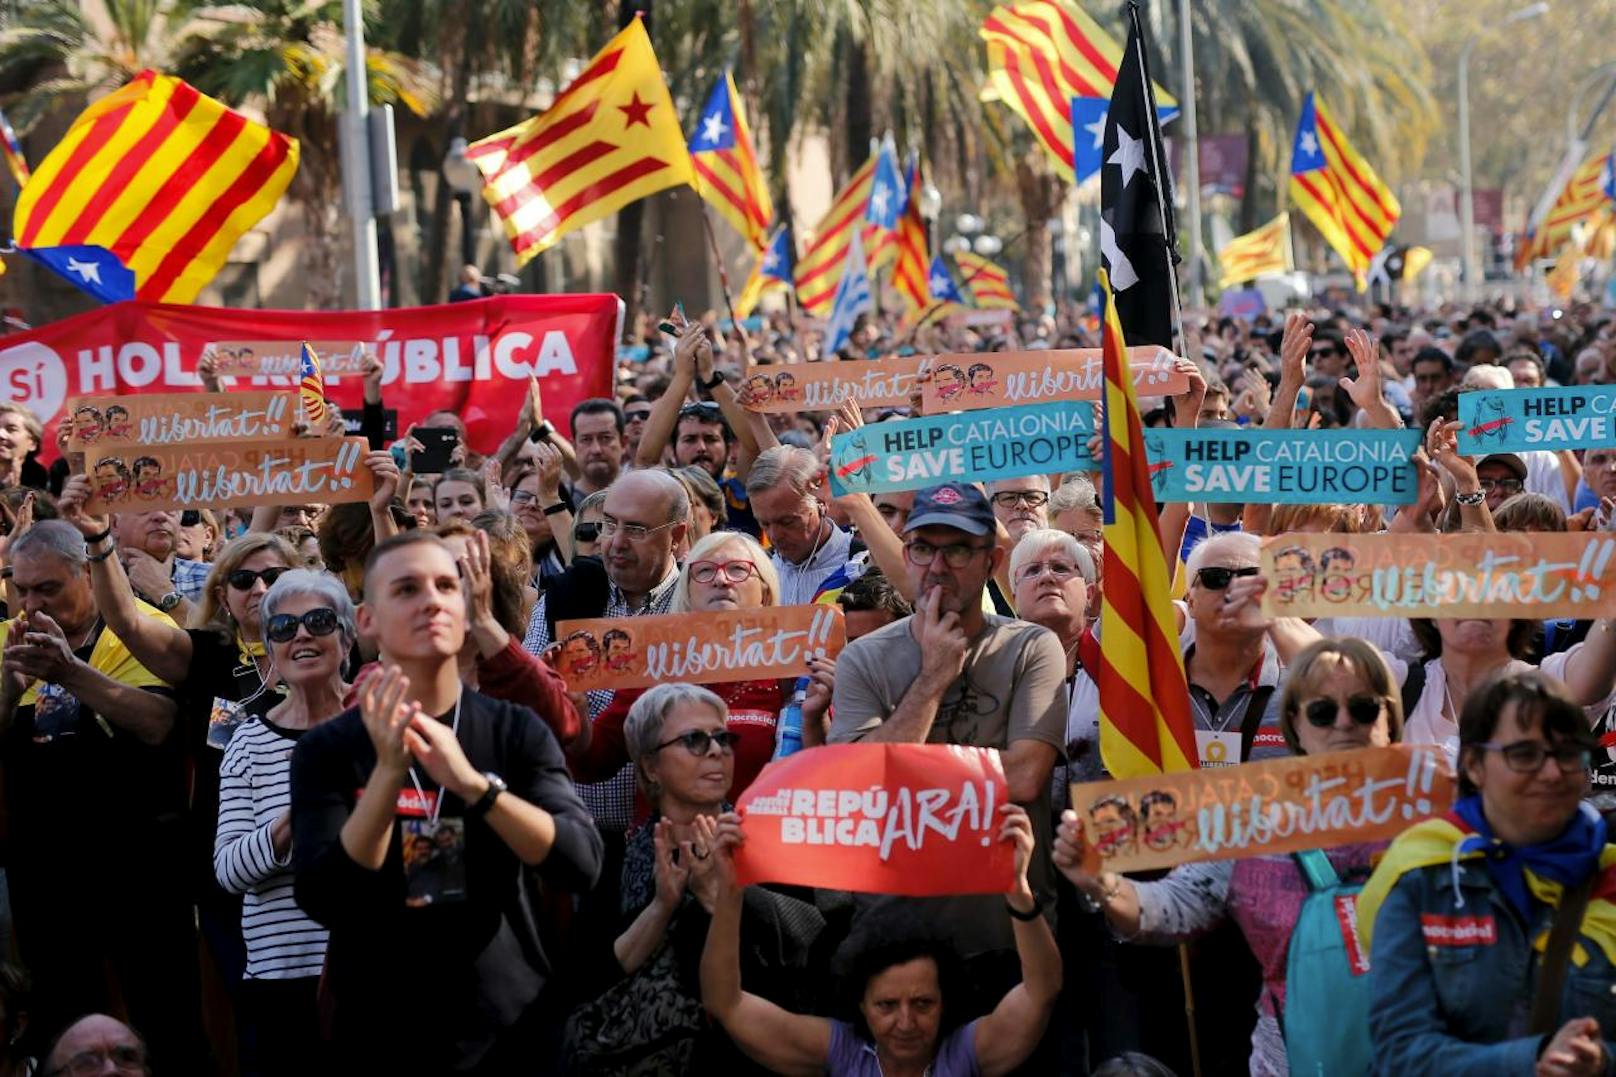 Auf den Straßen wurde die Entscheidung mit einem Jubelschrei aufgenommen. Die Menschen stimmten lautstark das alte Volkslied "Els Segadors" an, welches seit 1931 die offizielle Hymne Kataloniens ist.